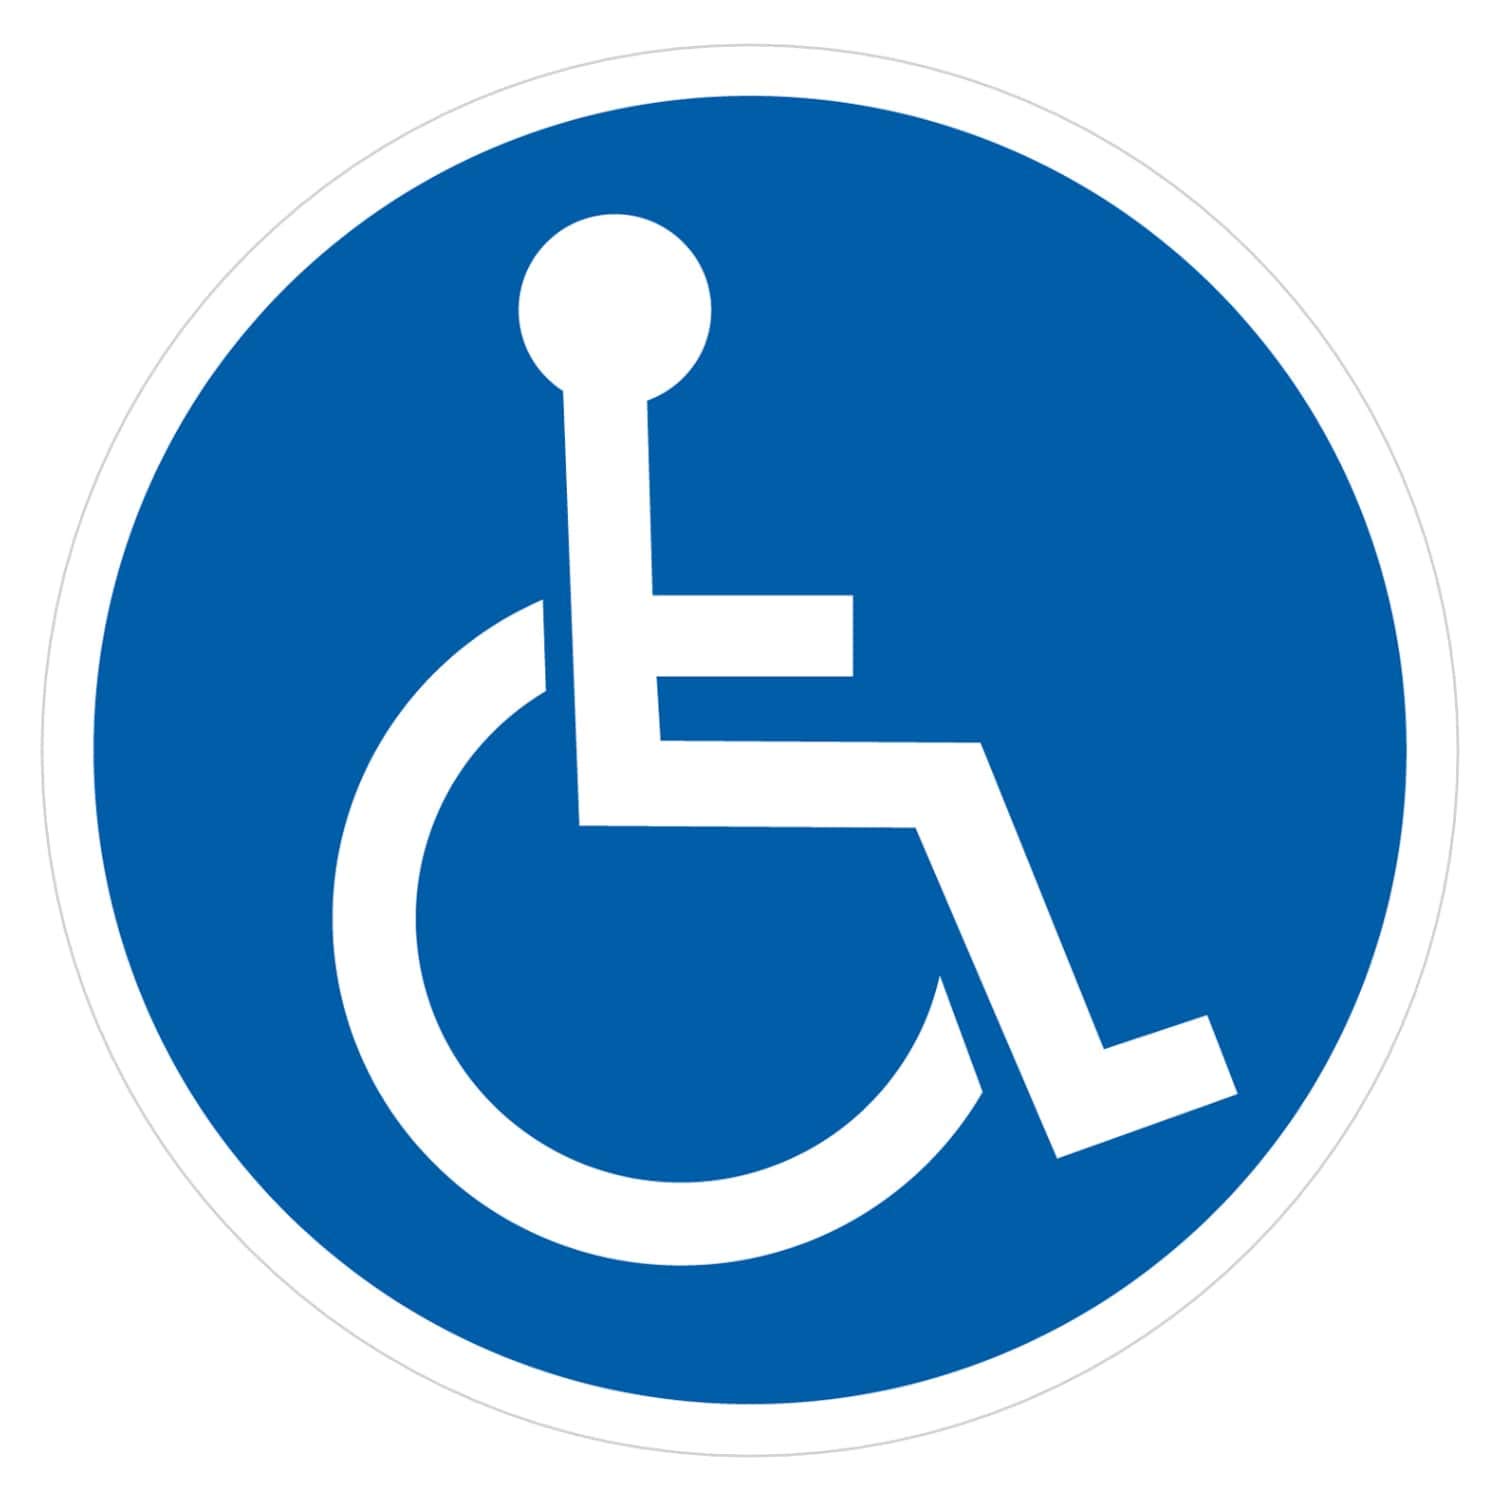 deformaze Sticker Rollstuhlfahrer Behinderten Aufkleber Warnaufkleber Selbstklebend KFZ Auto Scheibe UV Wetterfest Rund Blau Weiß - Verschiedene Größen wählbar (5 cm) von deformaze